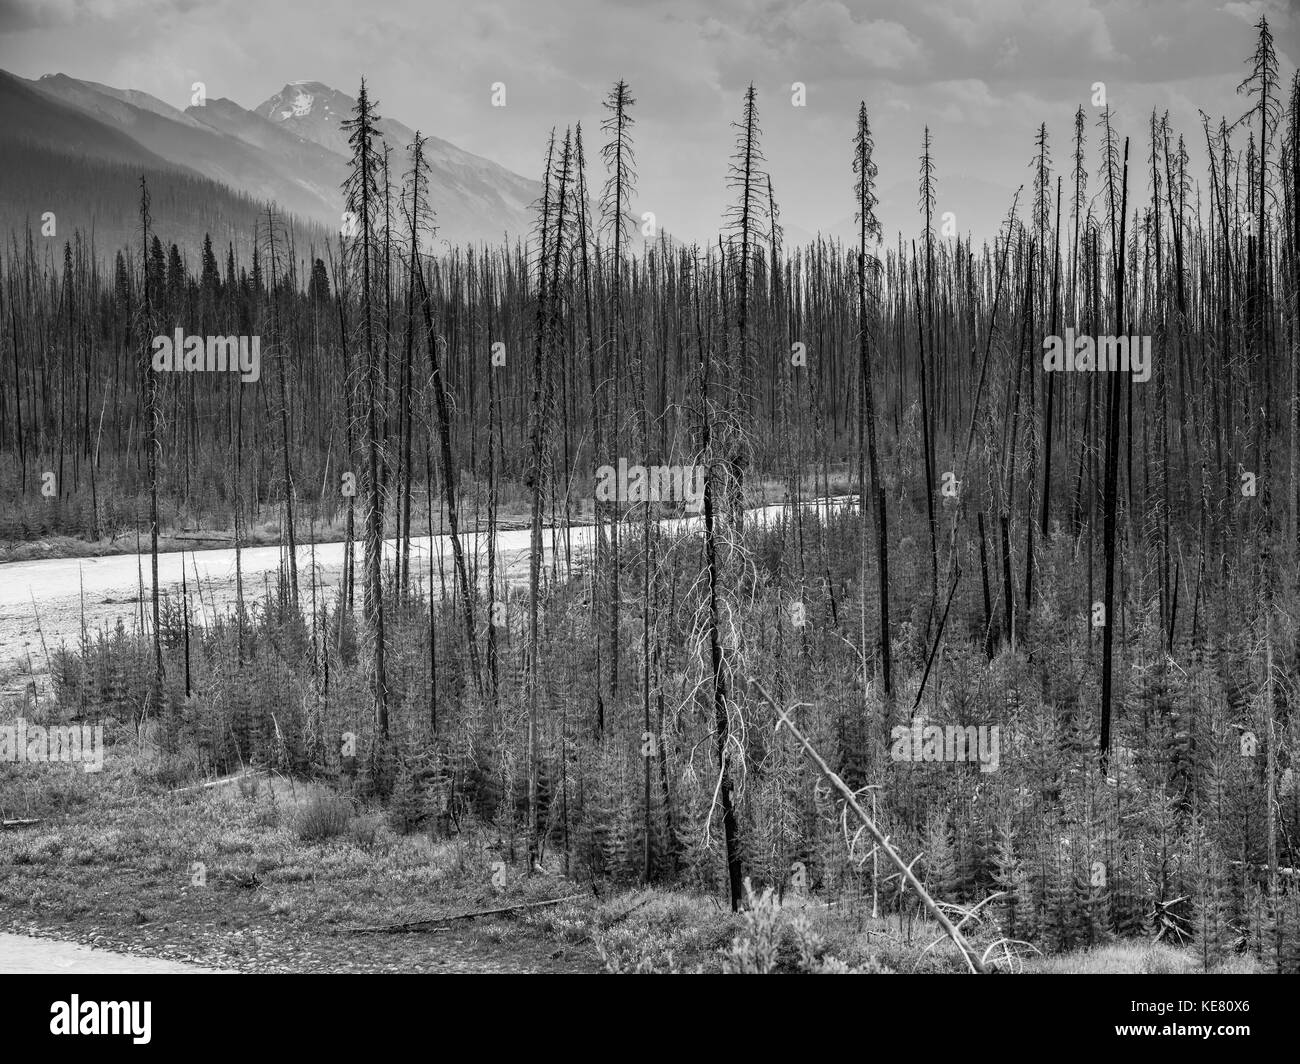 Schwarz-weiß Bild von Blattlosen, tote Bäume und neues Wachstum eines Waldes in den Bergen; Edgewater, British Columbia, Kanada Stockfoto